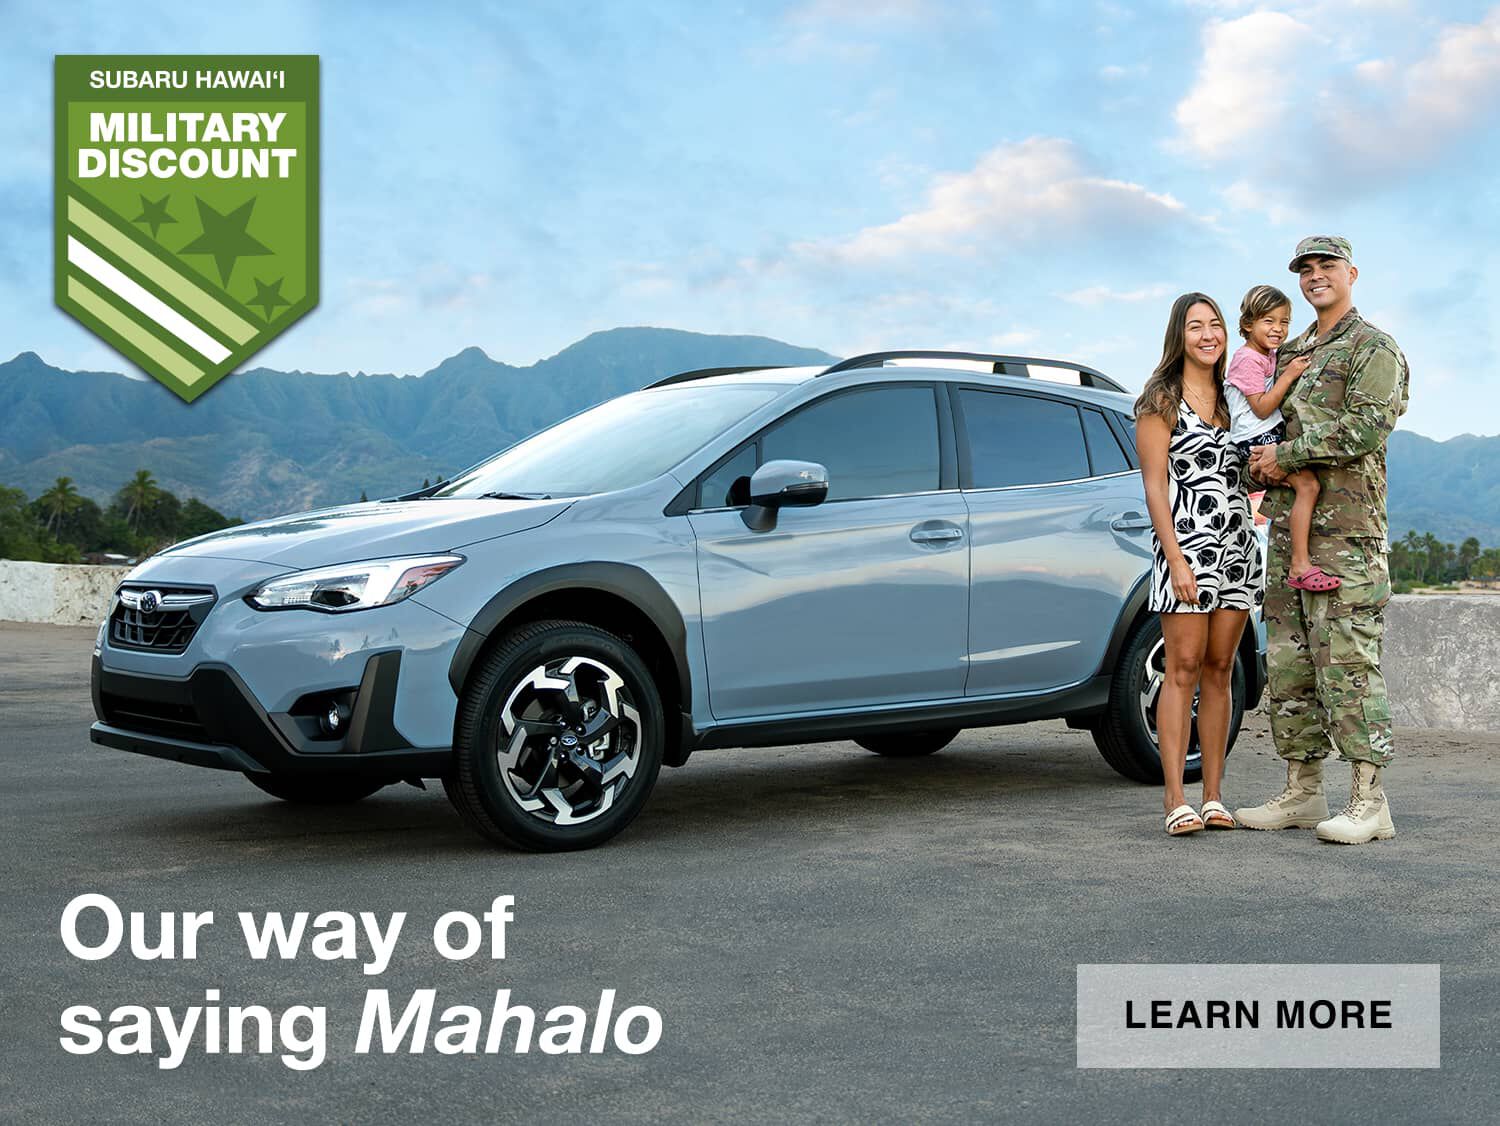 Family posing alongside a Subaru Crosstrek.